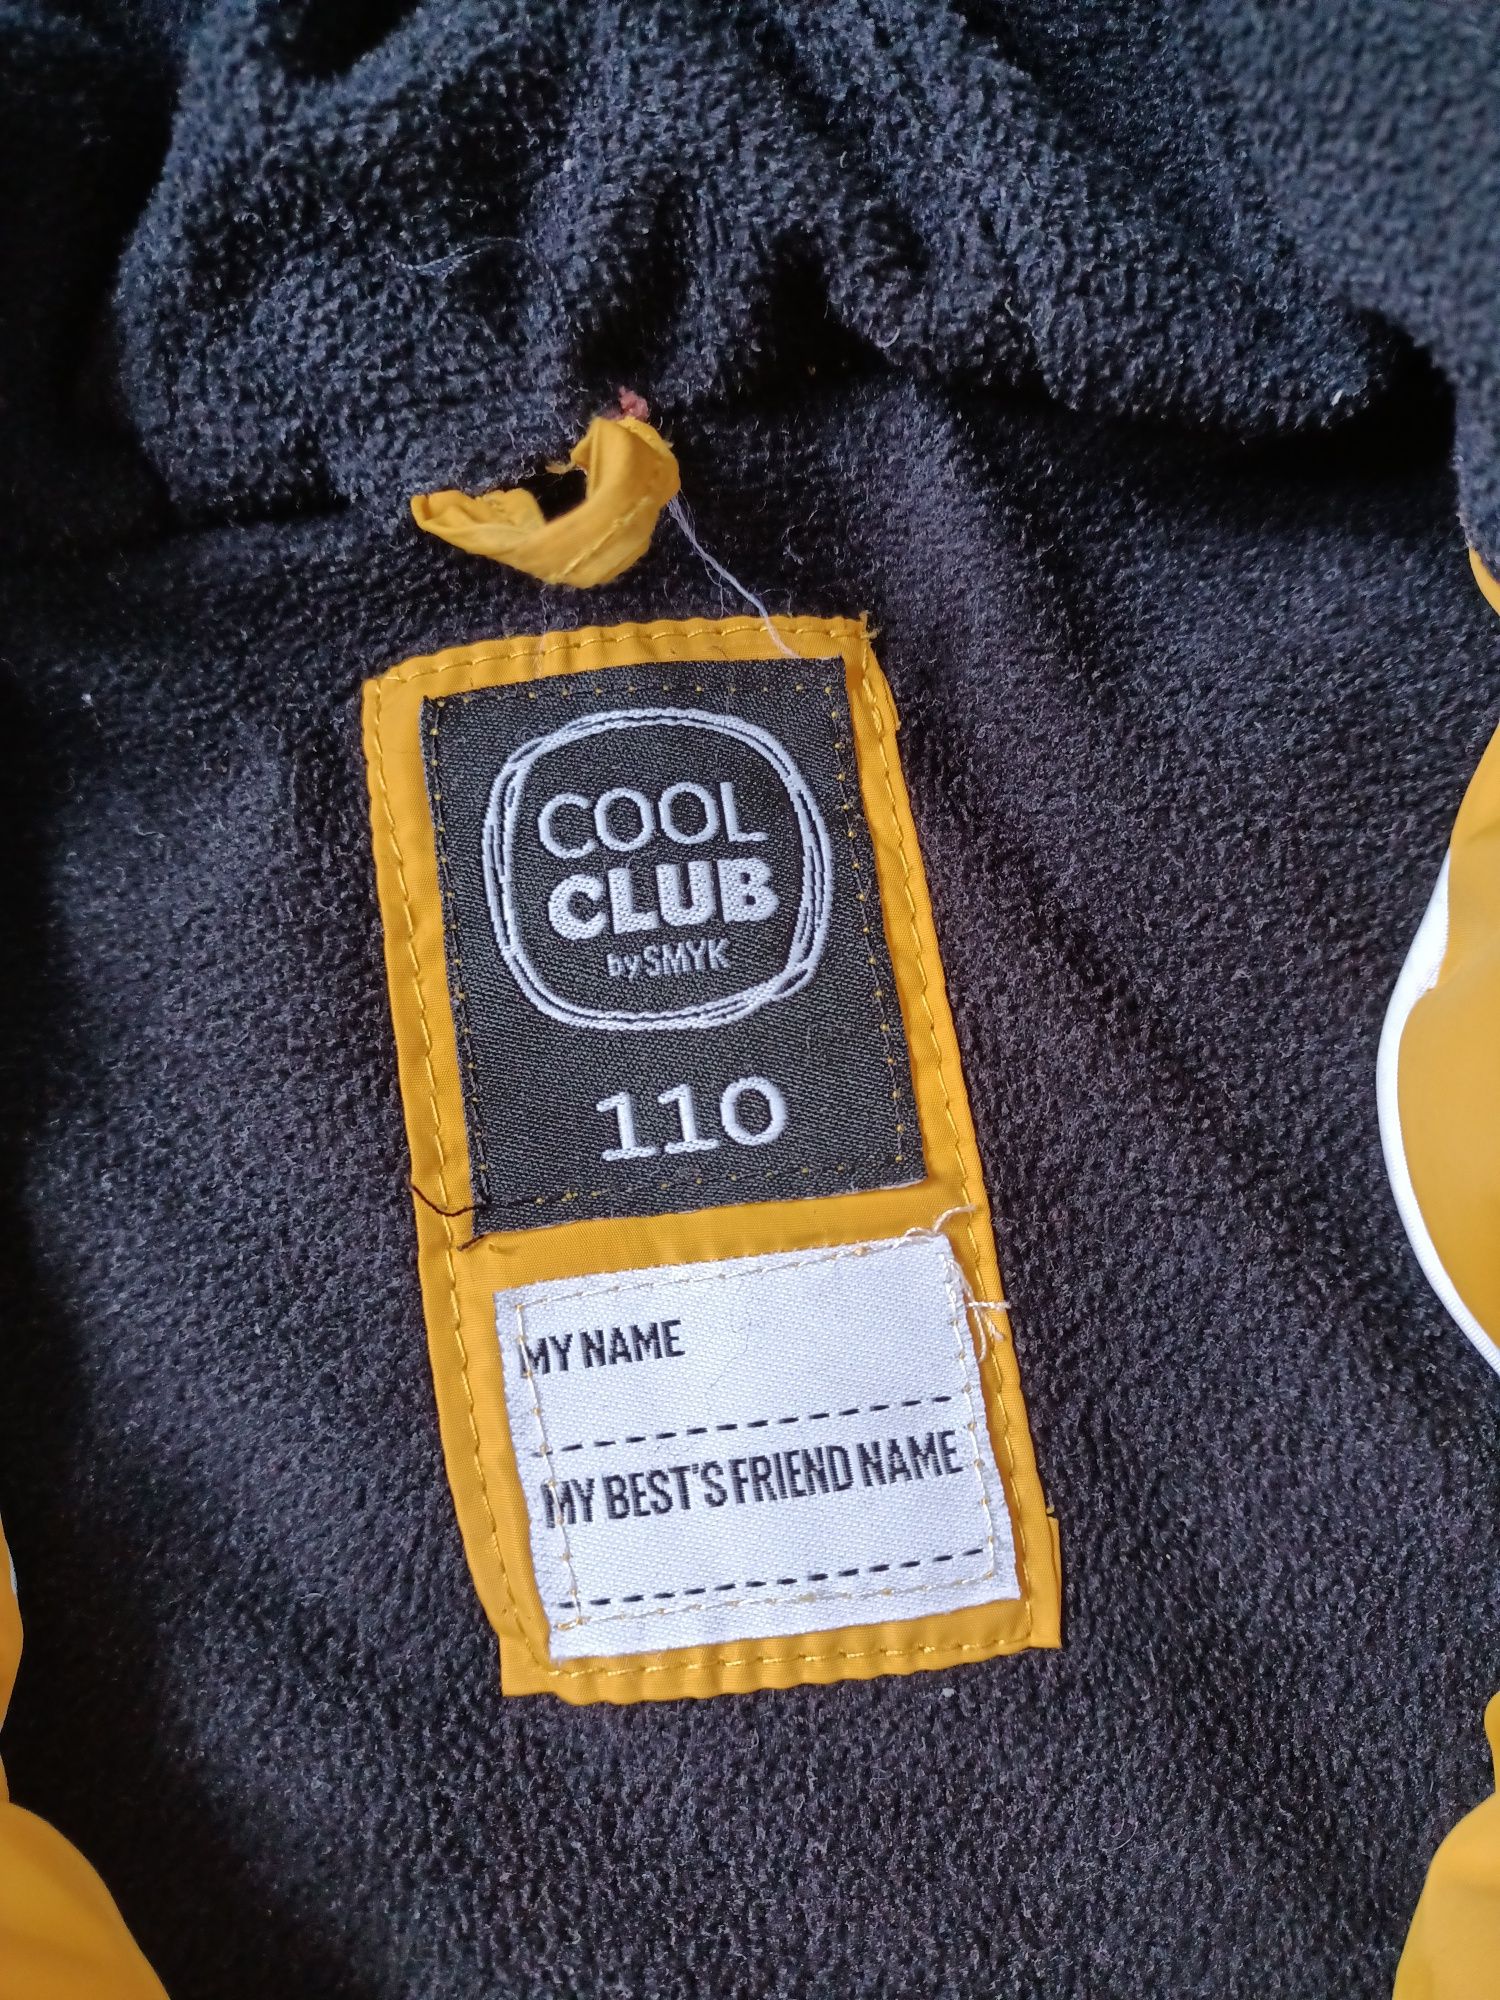 Cool club smyk kurtka kurtki zimowe 110 cm bliźniaki